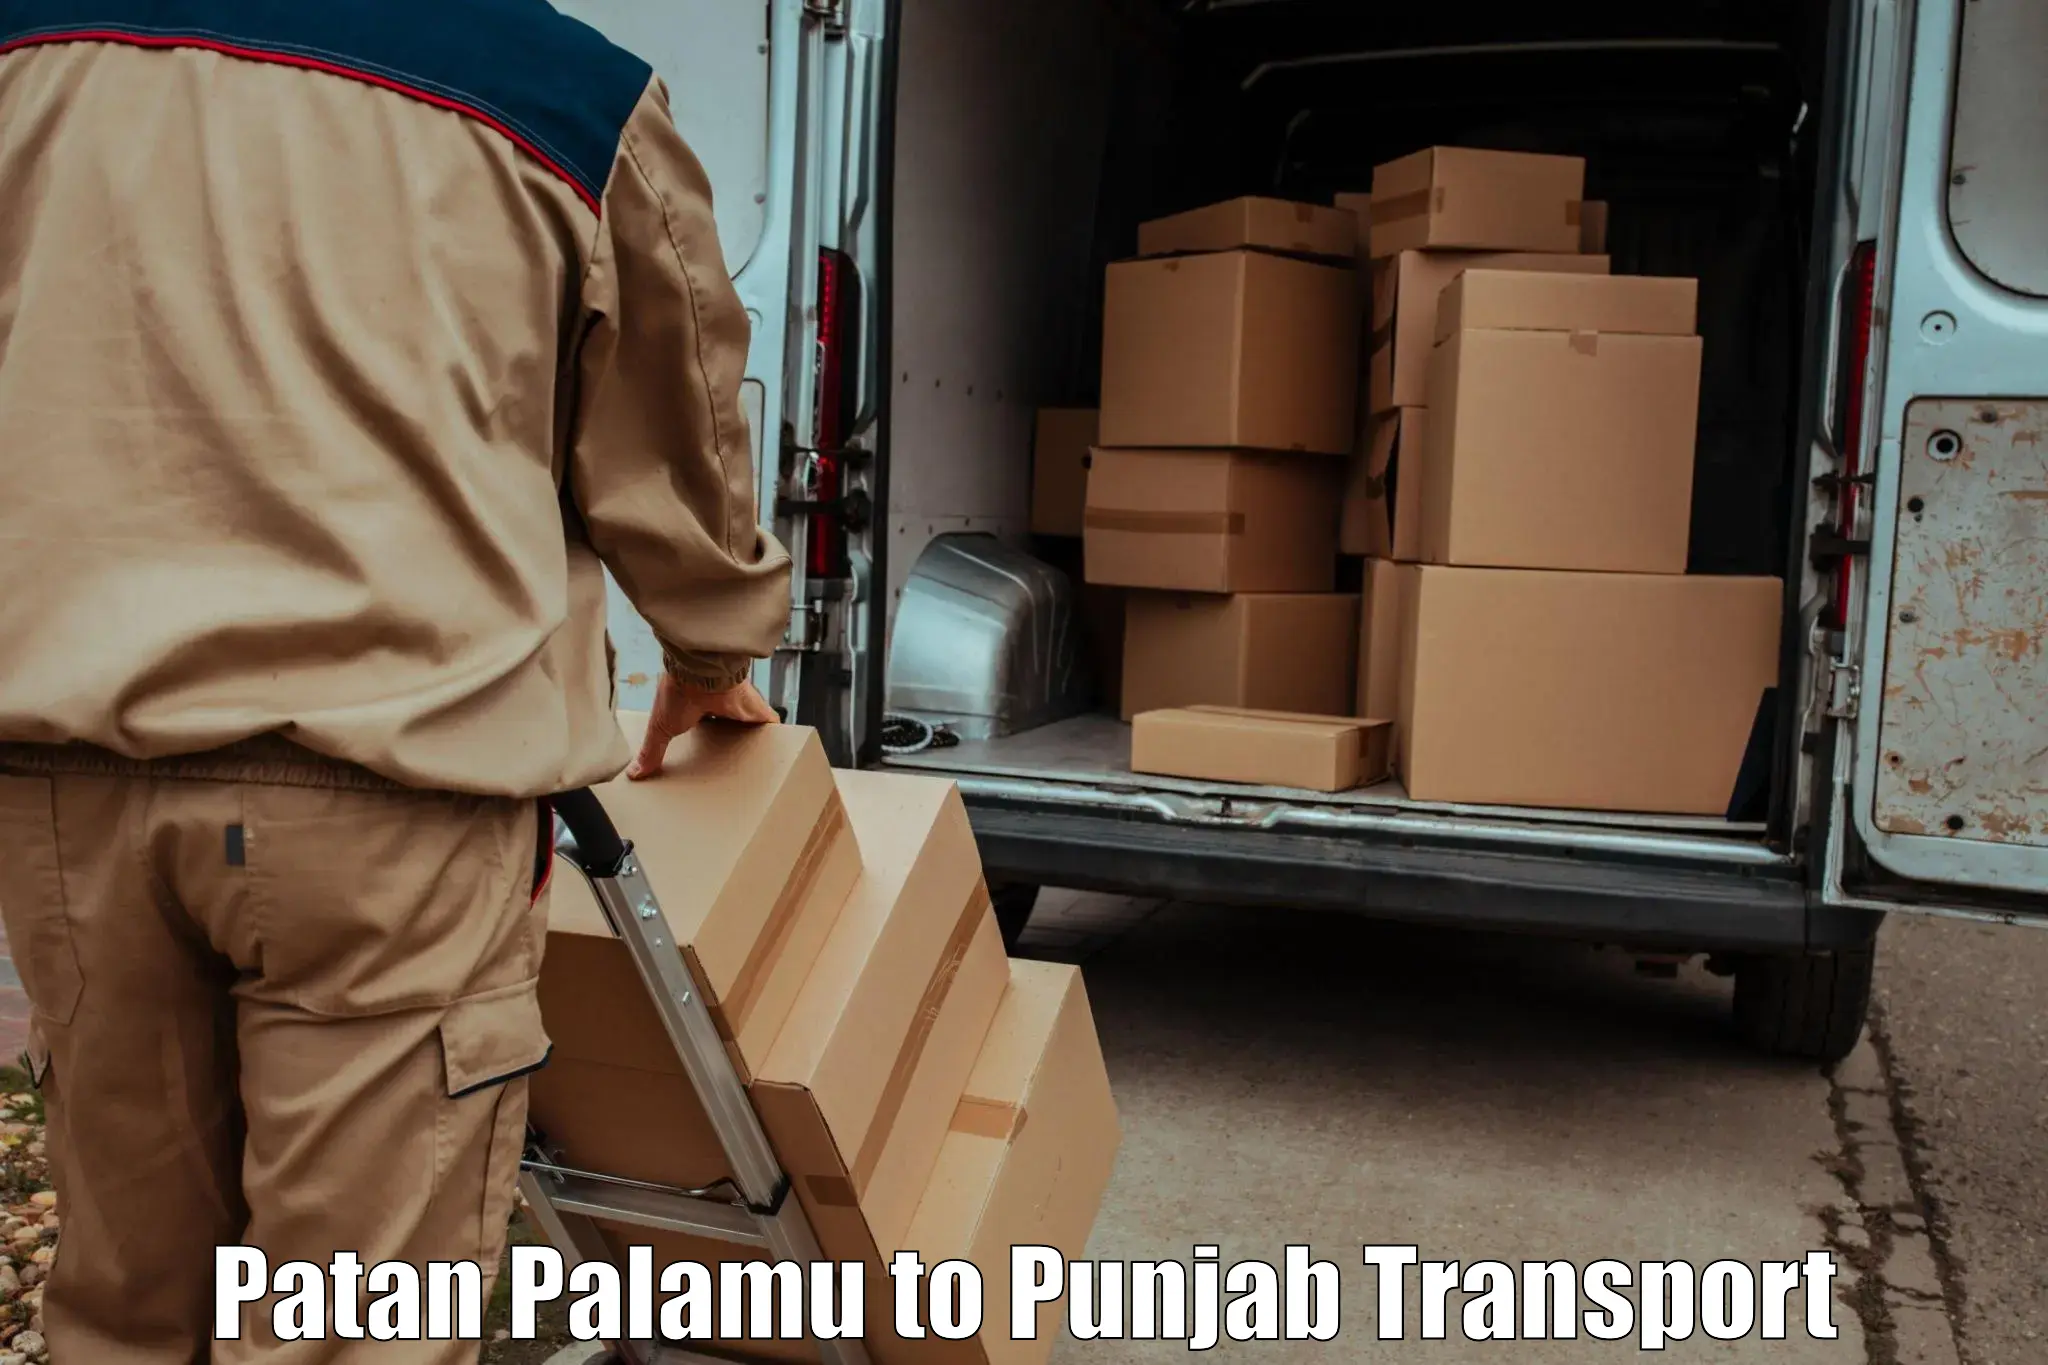 Furniture transport service Patan Palamu to Nawanshahr